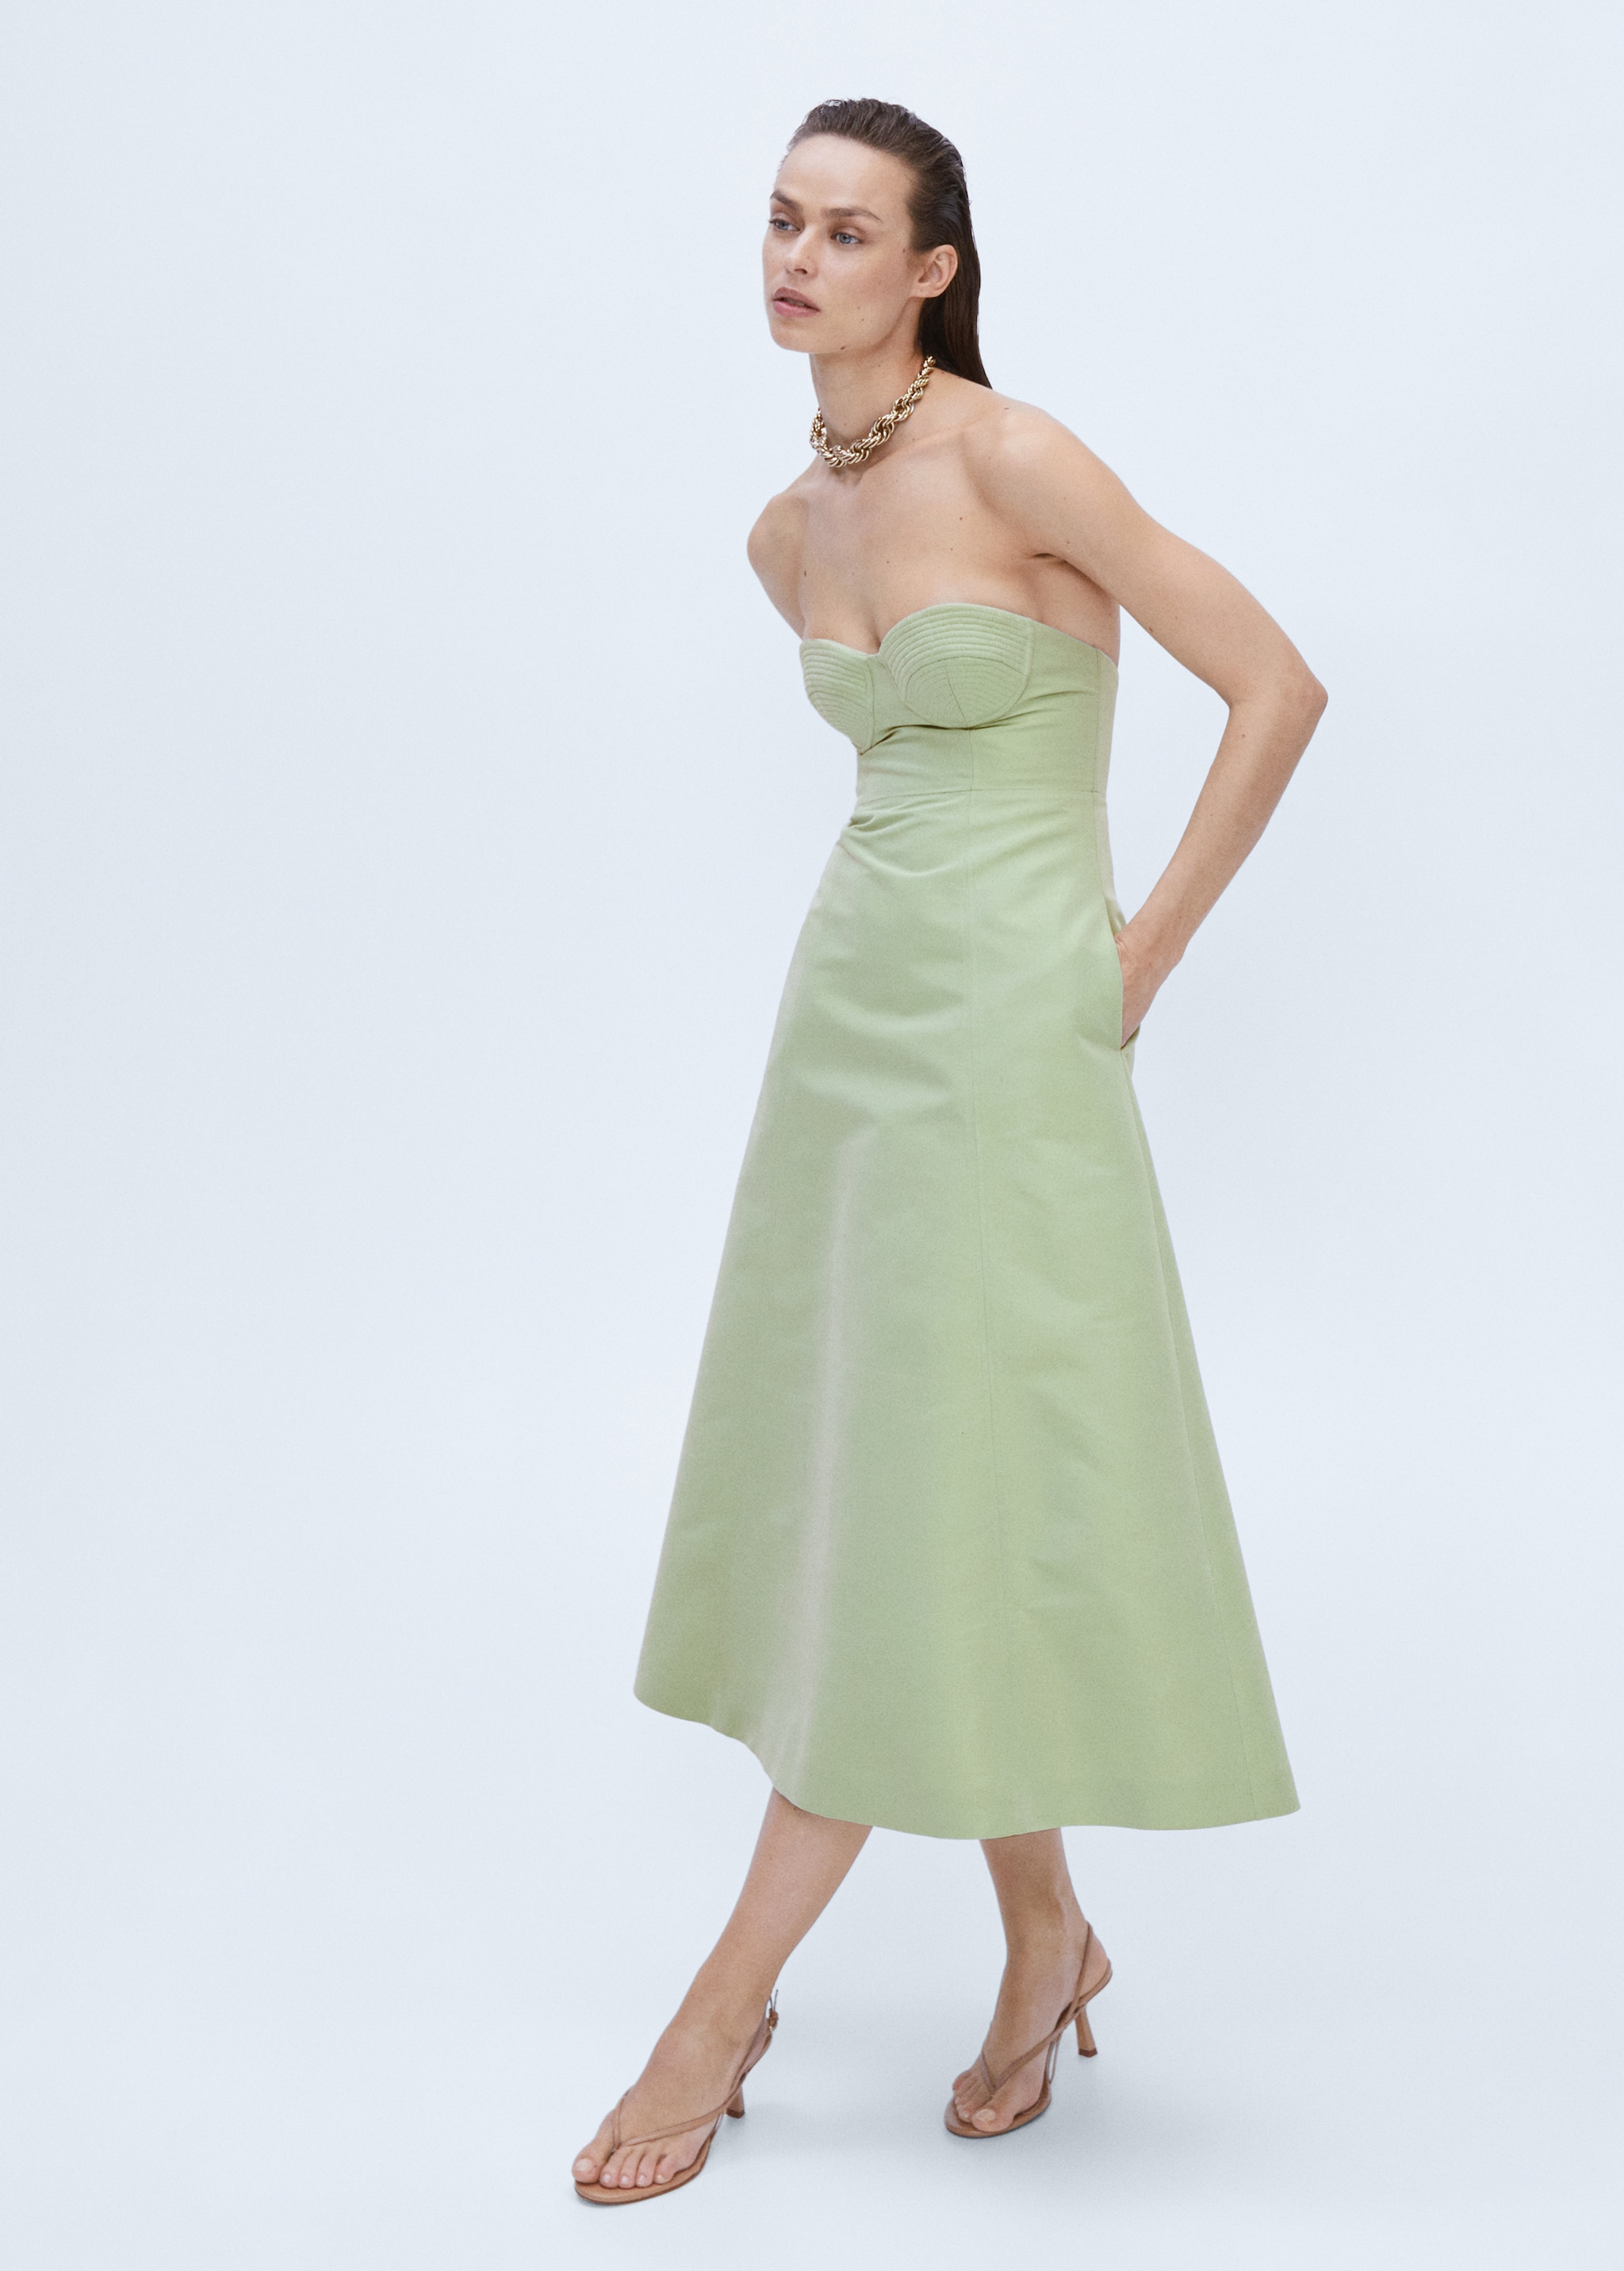 Φόρεμα κορσές εβαζέ - Λεπτομέρεια του προϊόντος 2